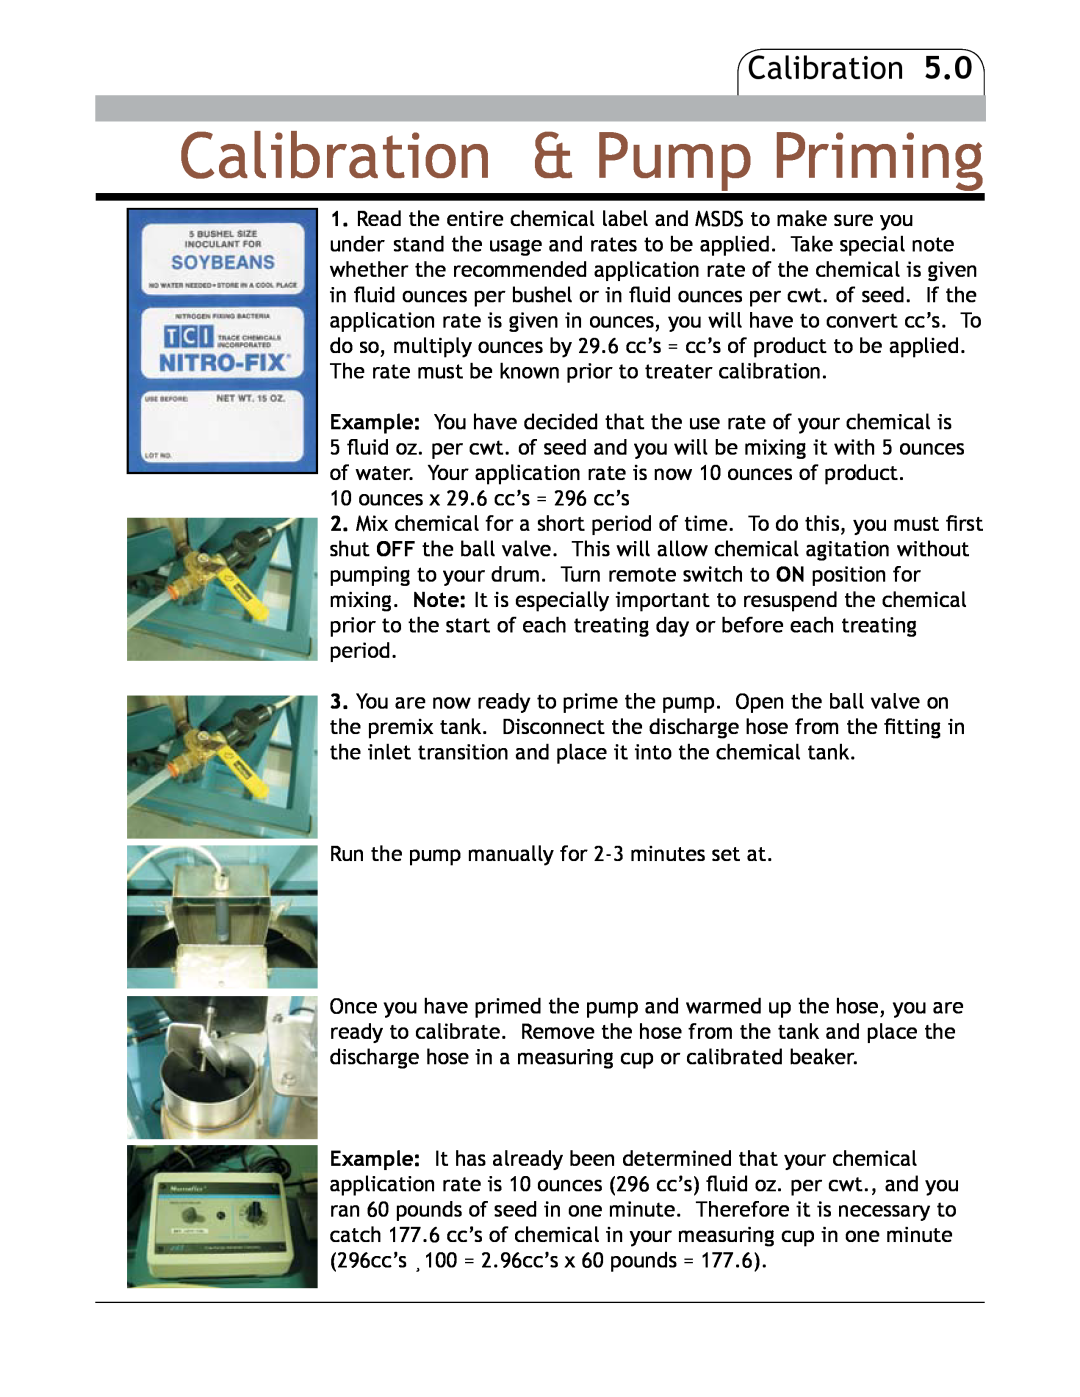 Bayer HealthCare CF-80 manual Calibration & Pump Priming 